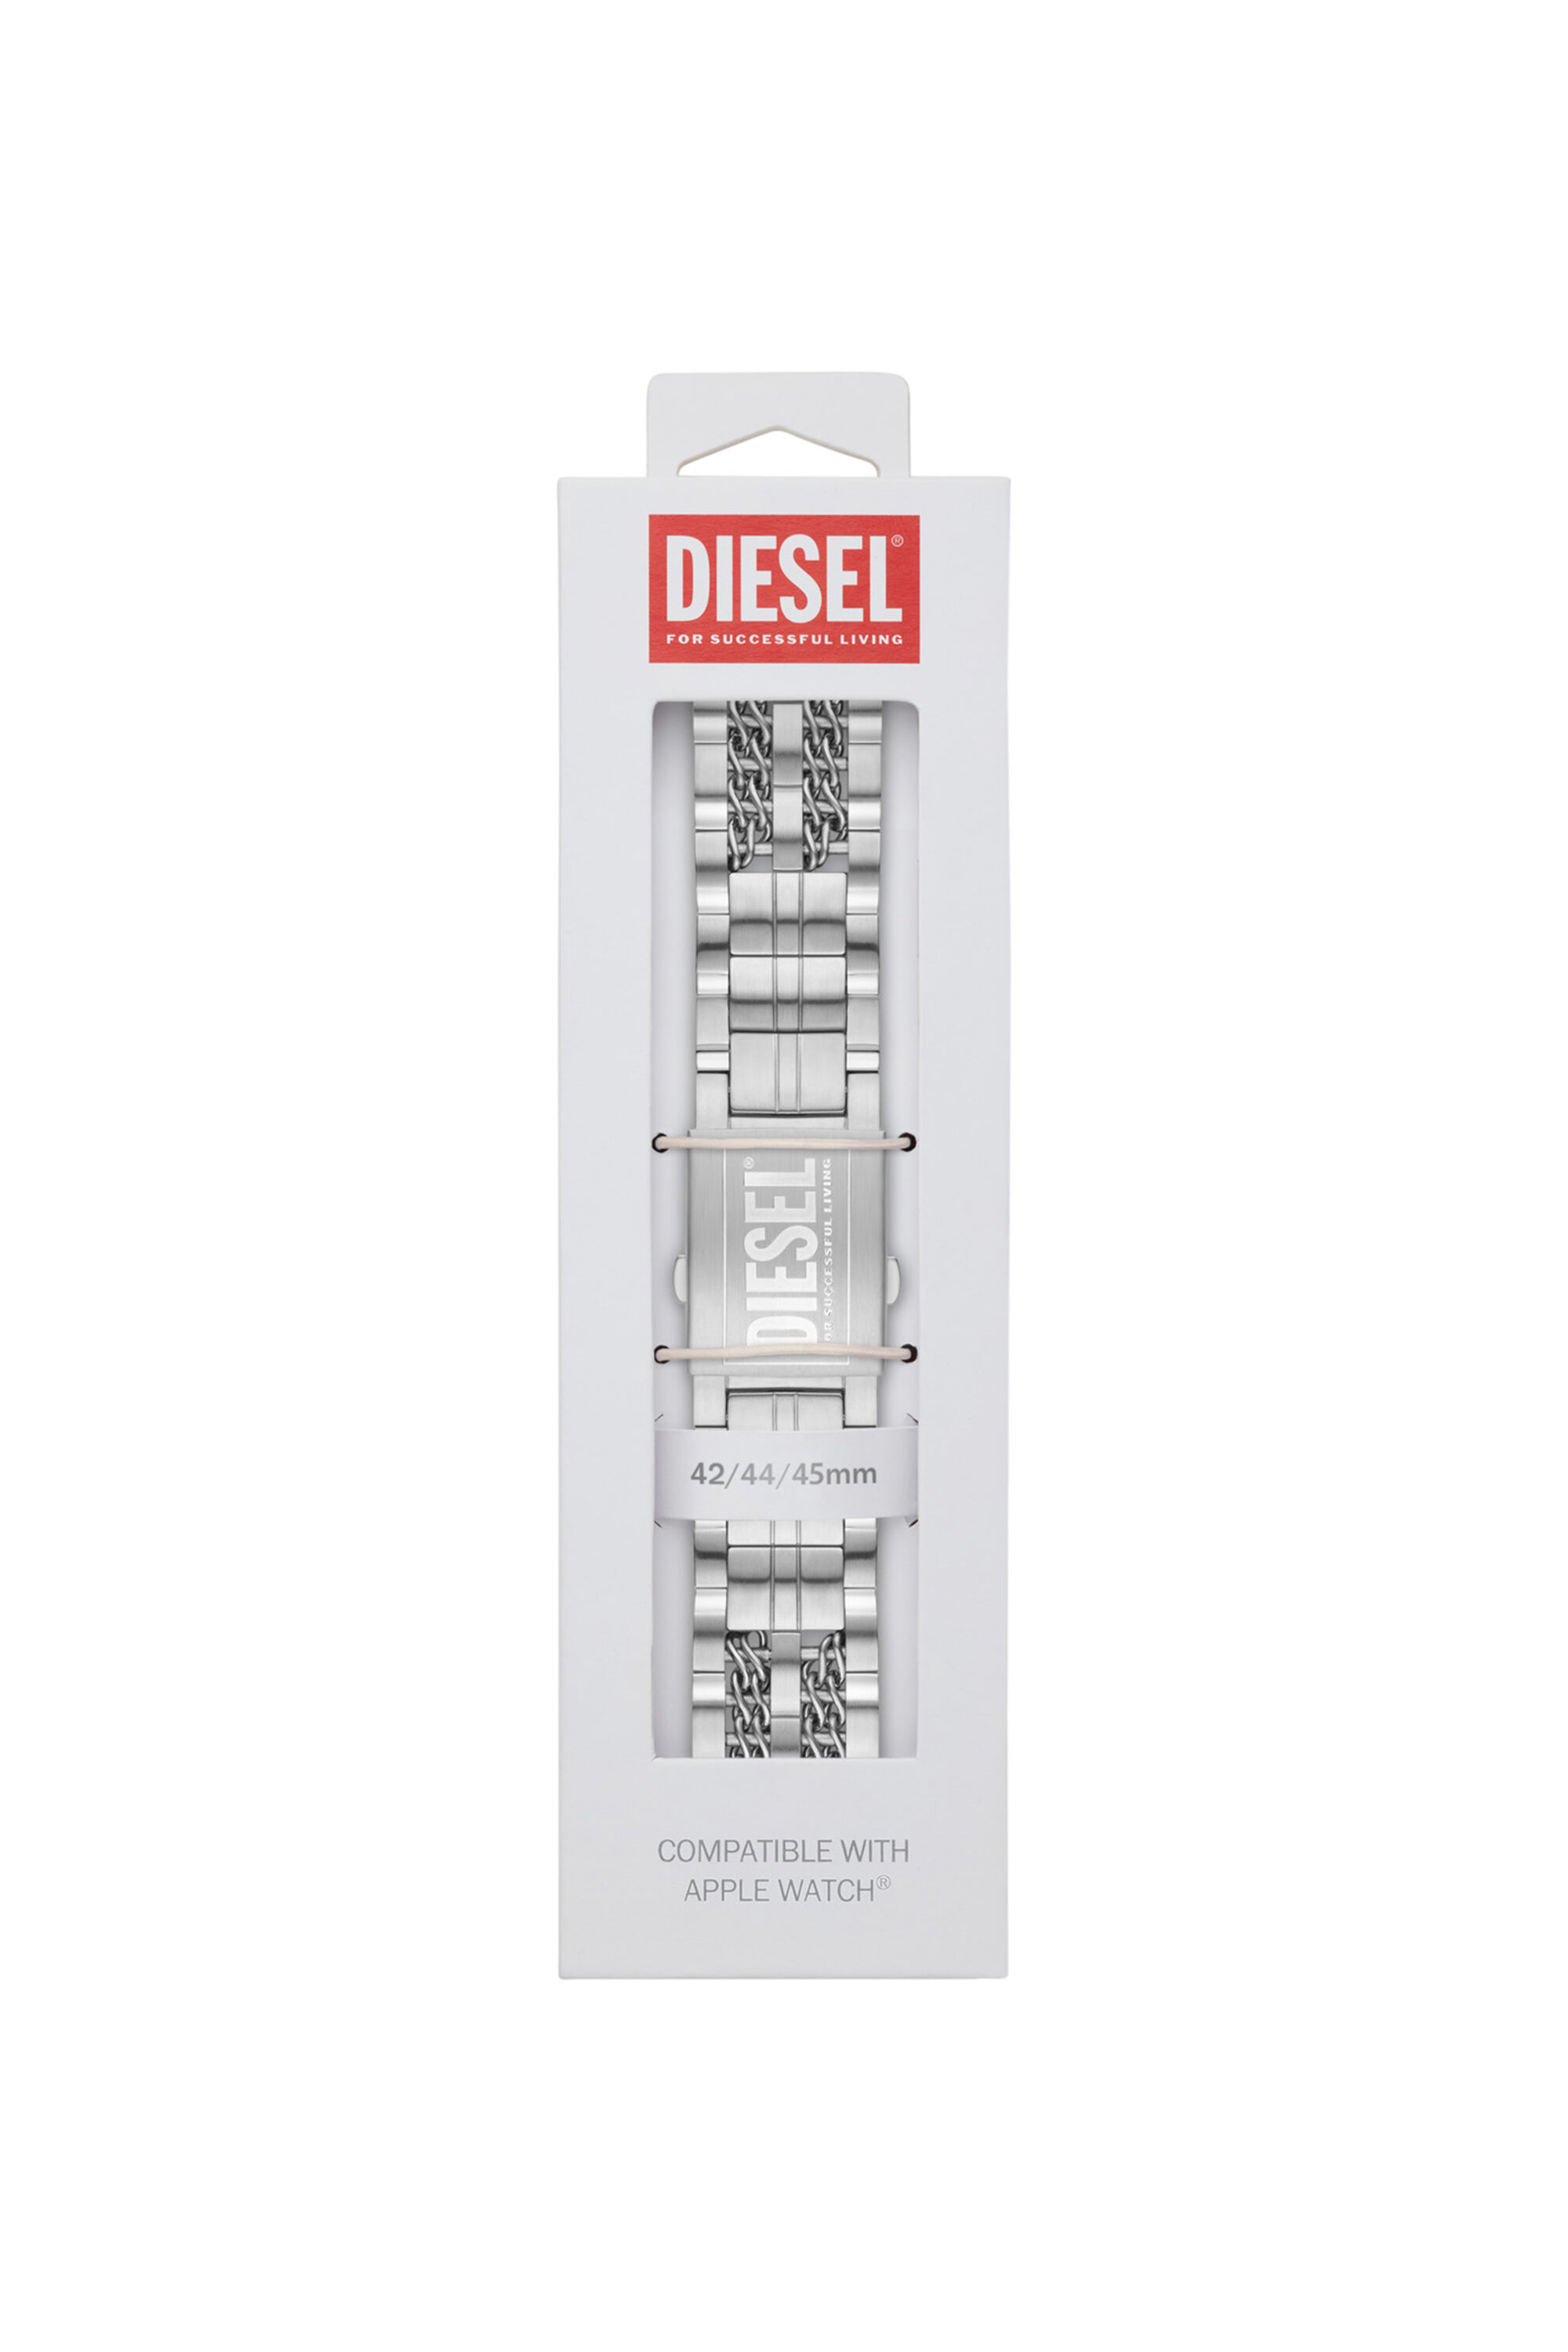 Diesel - DSS008, Grey - Image 2